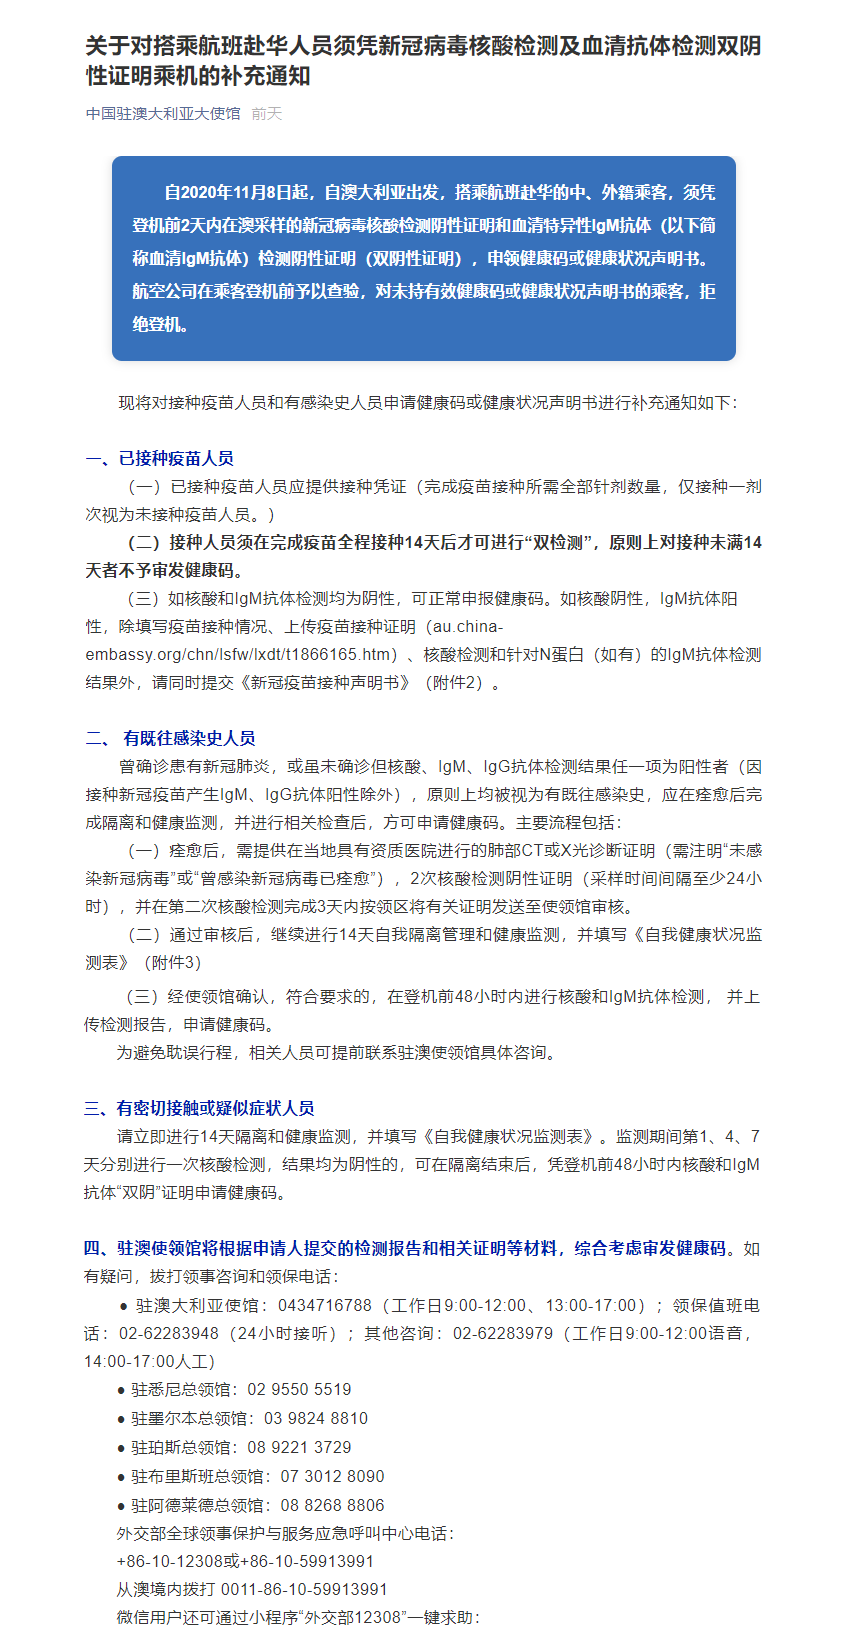 重要通知！中国驻澳大使馆发布：华人回国新规！